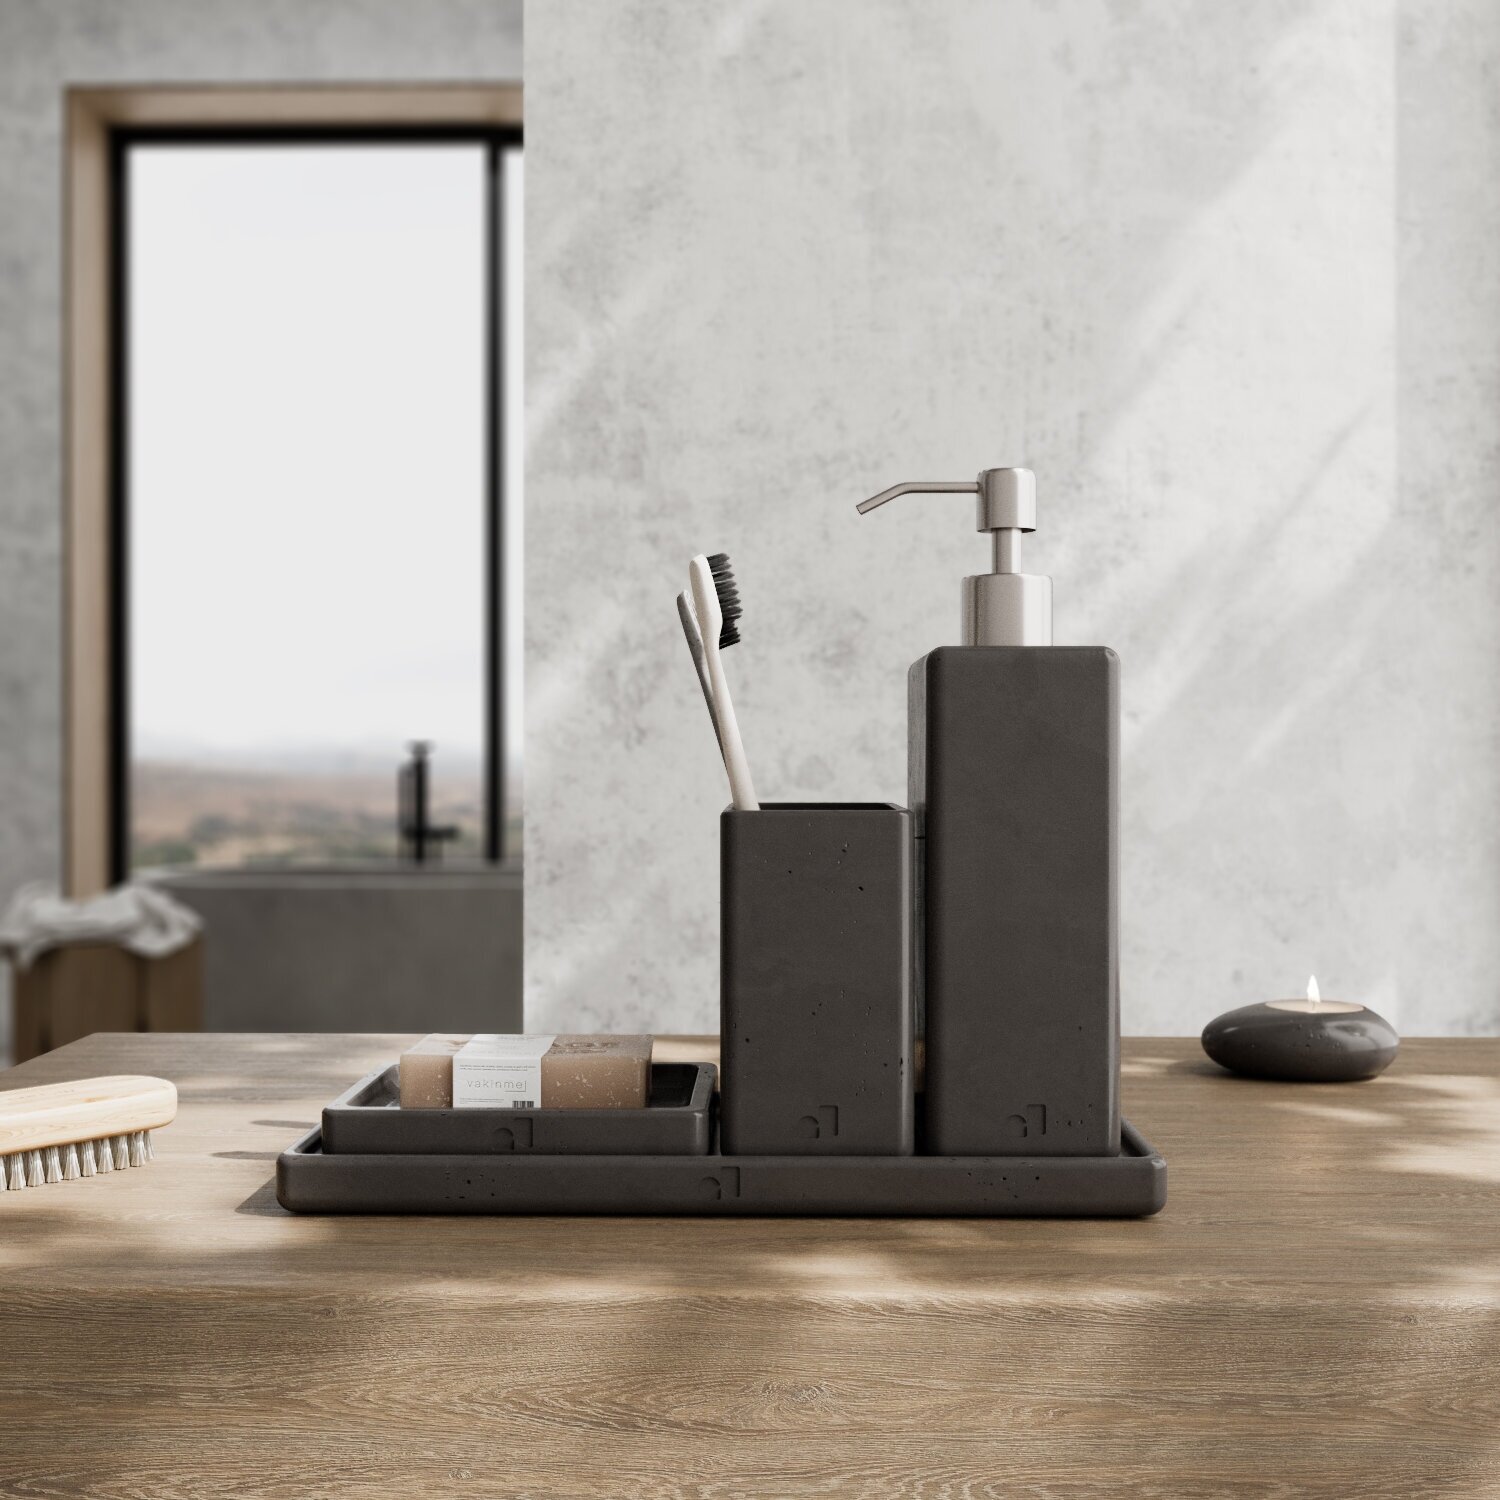 Набор аксессуаров для ванной комнаты "Oxford" арт бетон темно-серый, 4 предмета: дозатор, стакан, мыльница, поднос